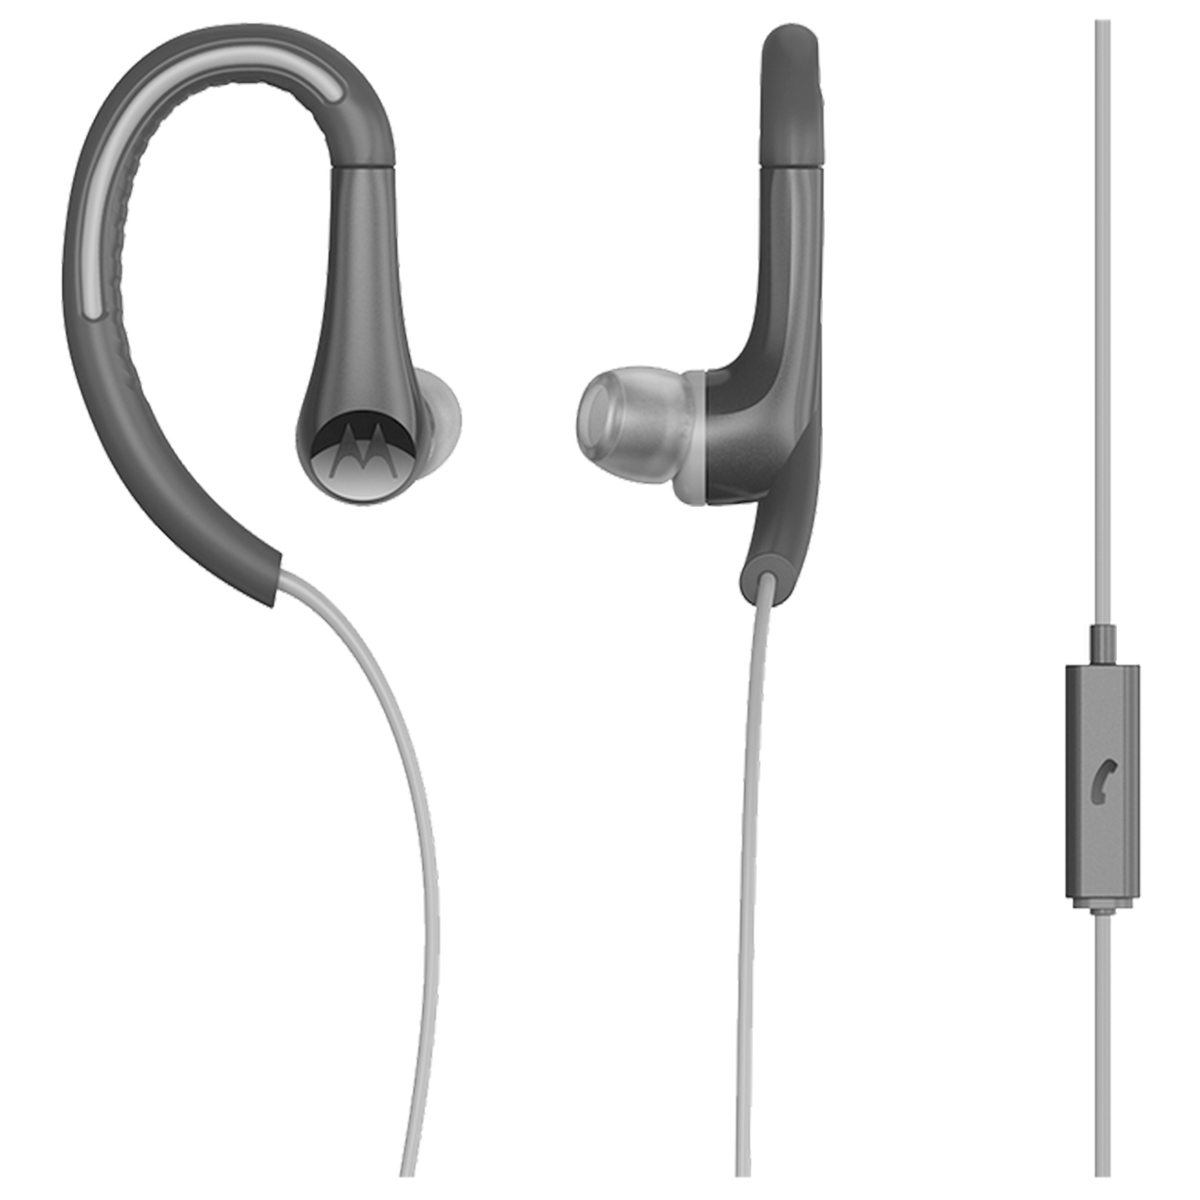 Fone de Ouvido Motorola Earbuds Sports SH008 - Intra-Auricular - com Microfone - Preto